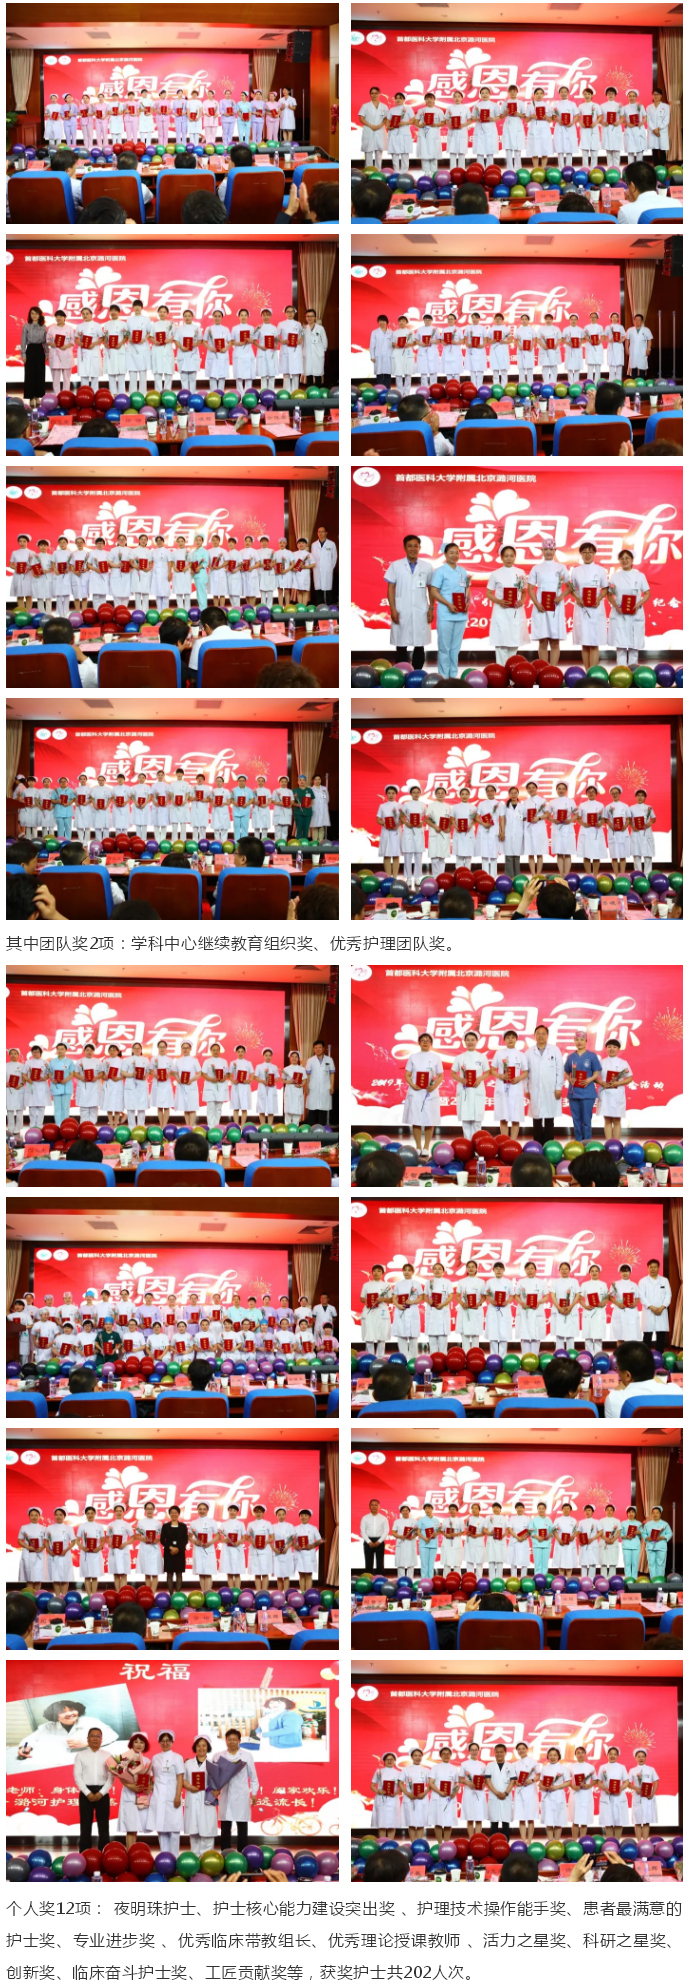 感恩有你 一路相伴——潞河医院举行纪念5.12国际护士节主题大会---2.jpg